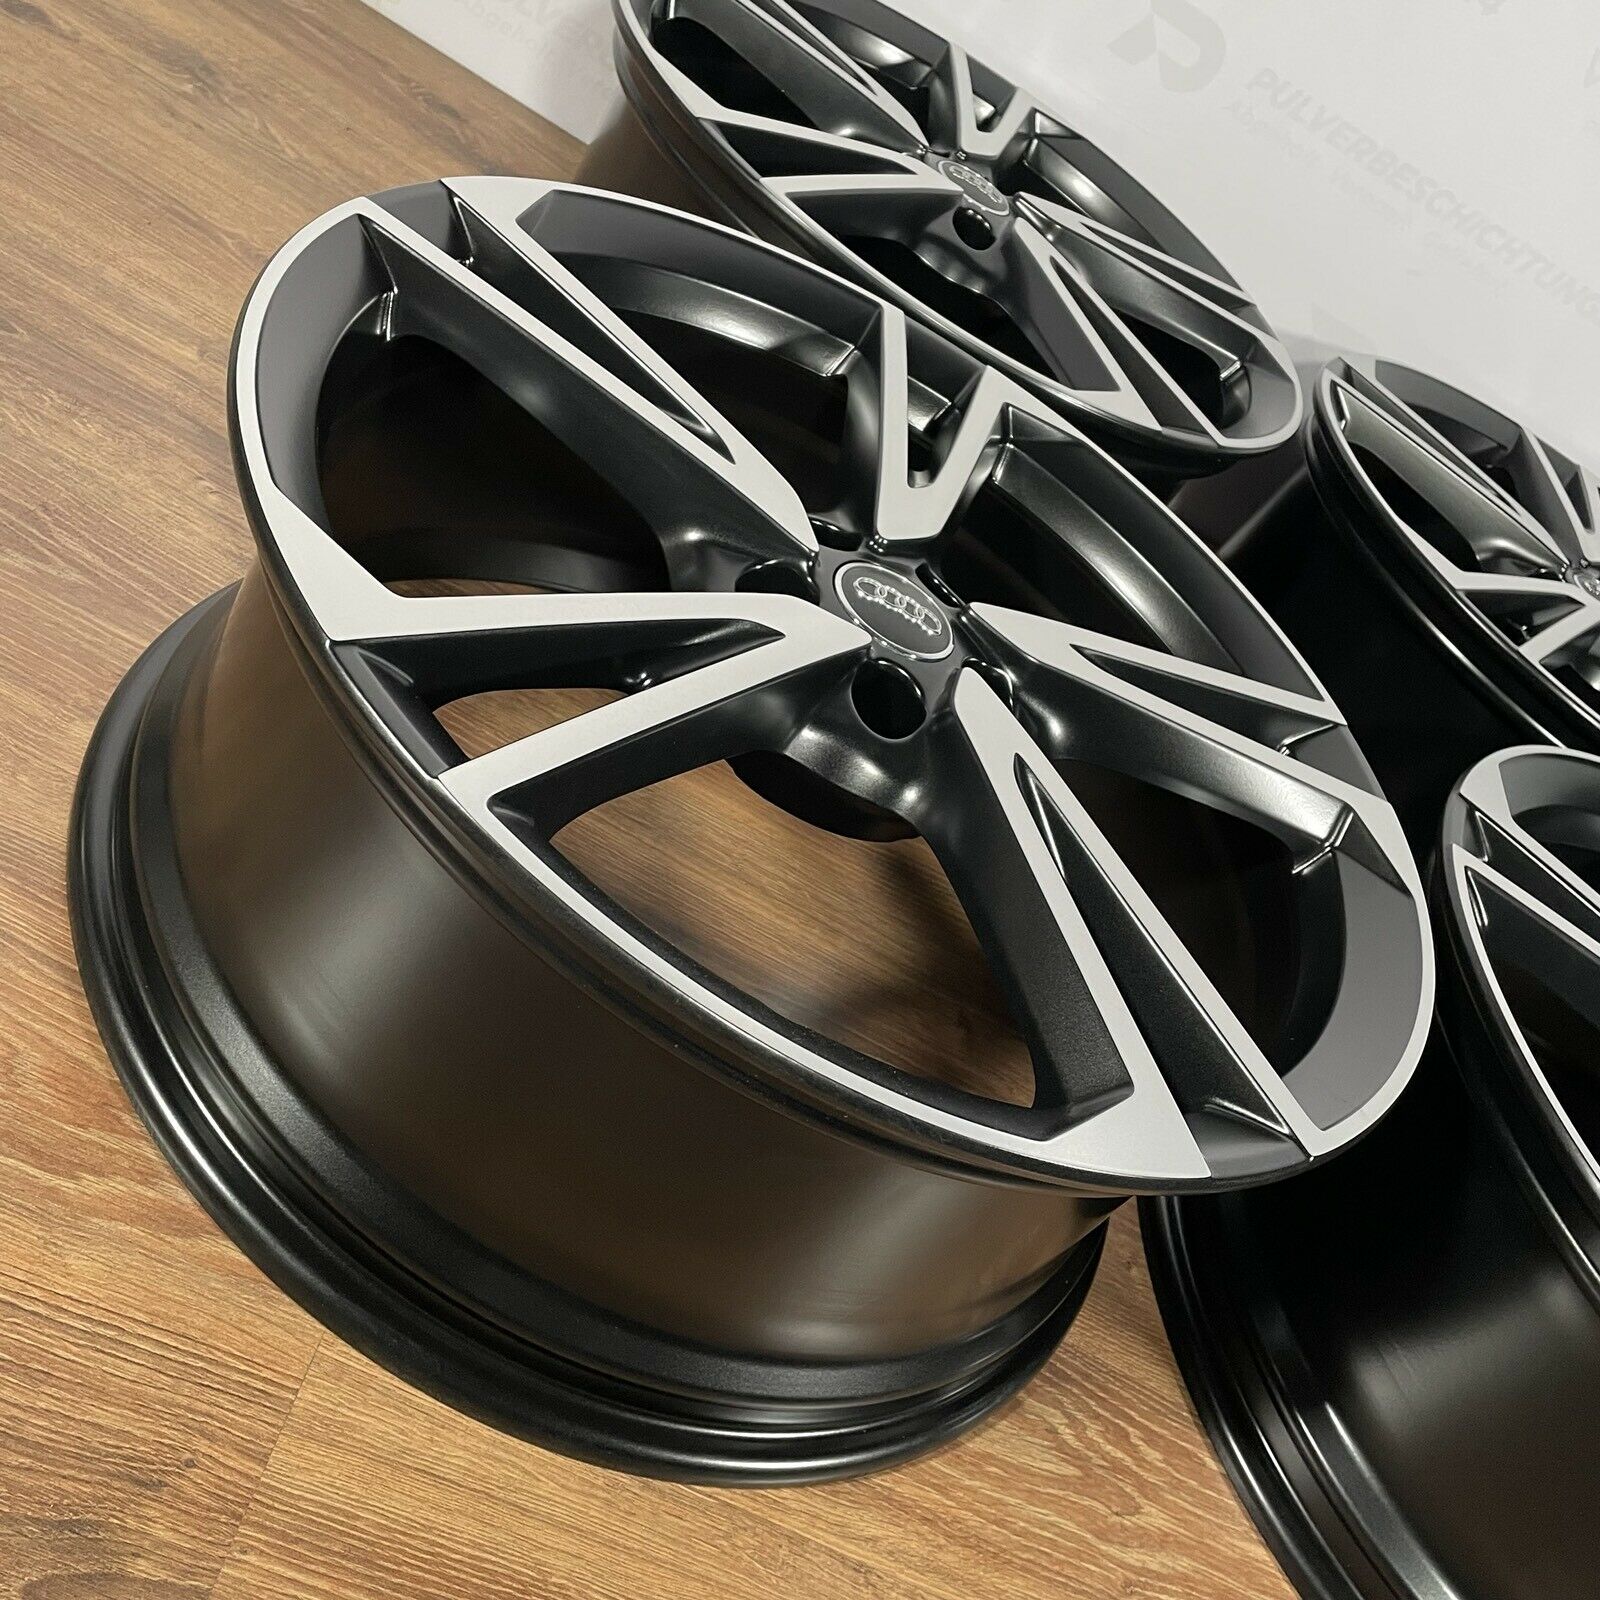 Originale 20 Zoll Audi Q5 FY S-Line Falx Alufelgen Leichtmetallfelgen Felgen schwarz (weitere Farben möglich) mit Allwetter Bereifung